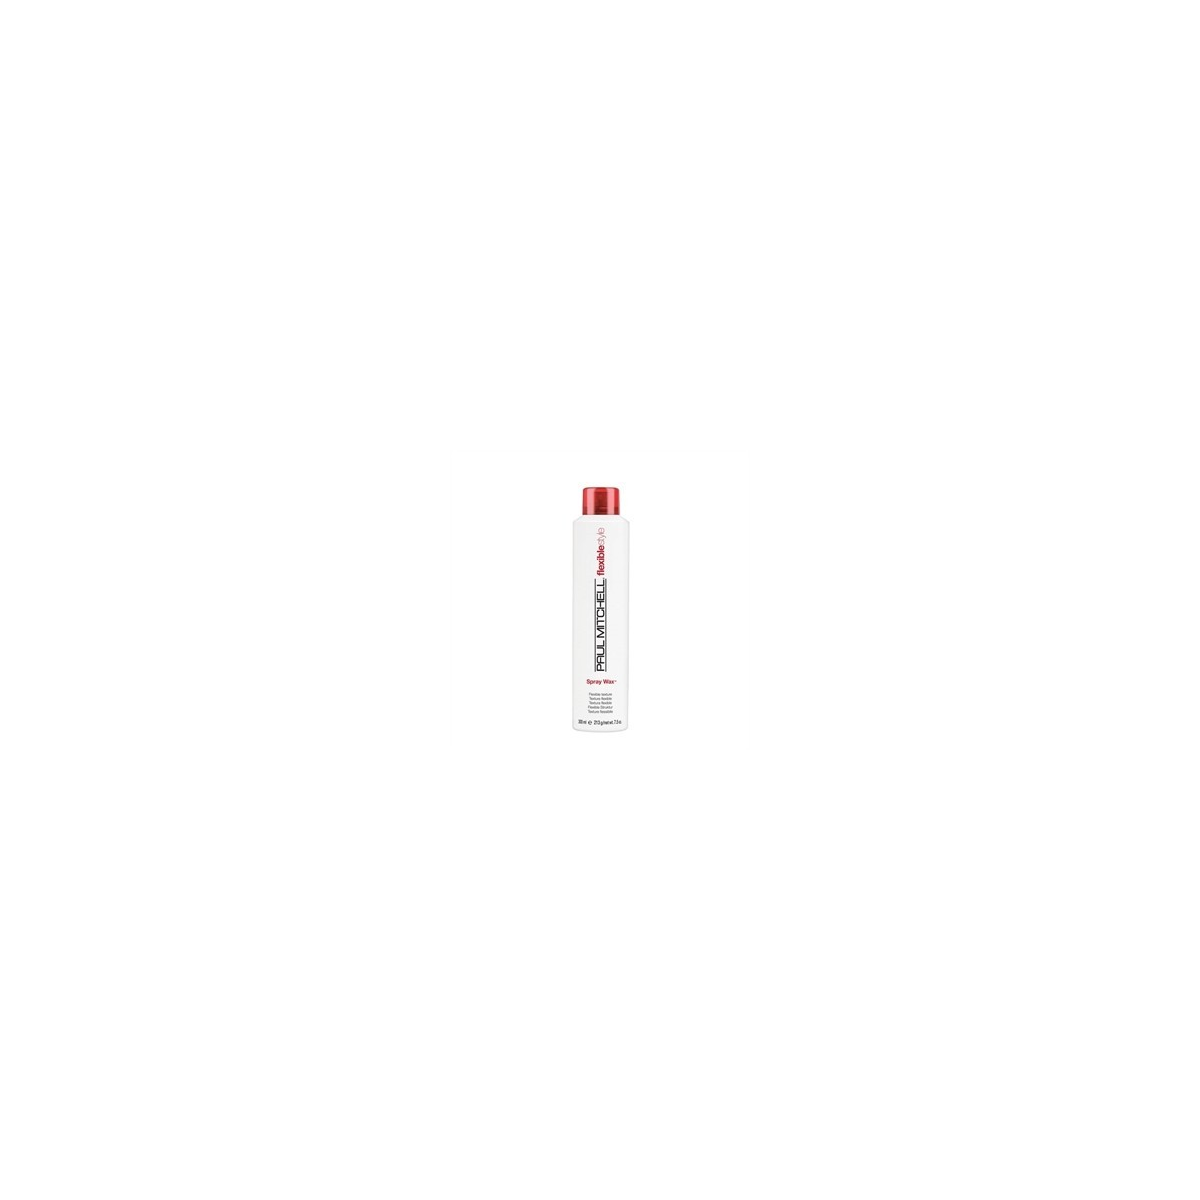 PAUL MITCHELL - FLEXIBLESTYLE - Spray Wax (125ml) Cera spray